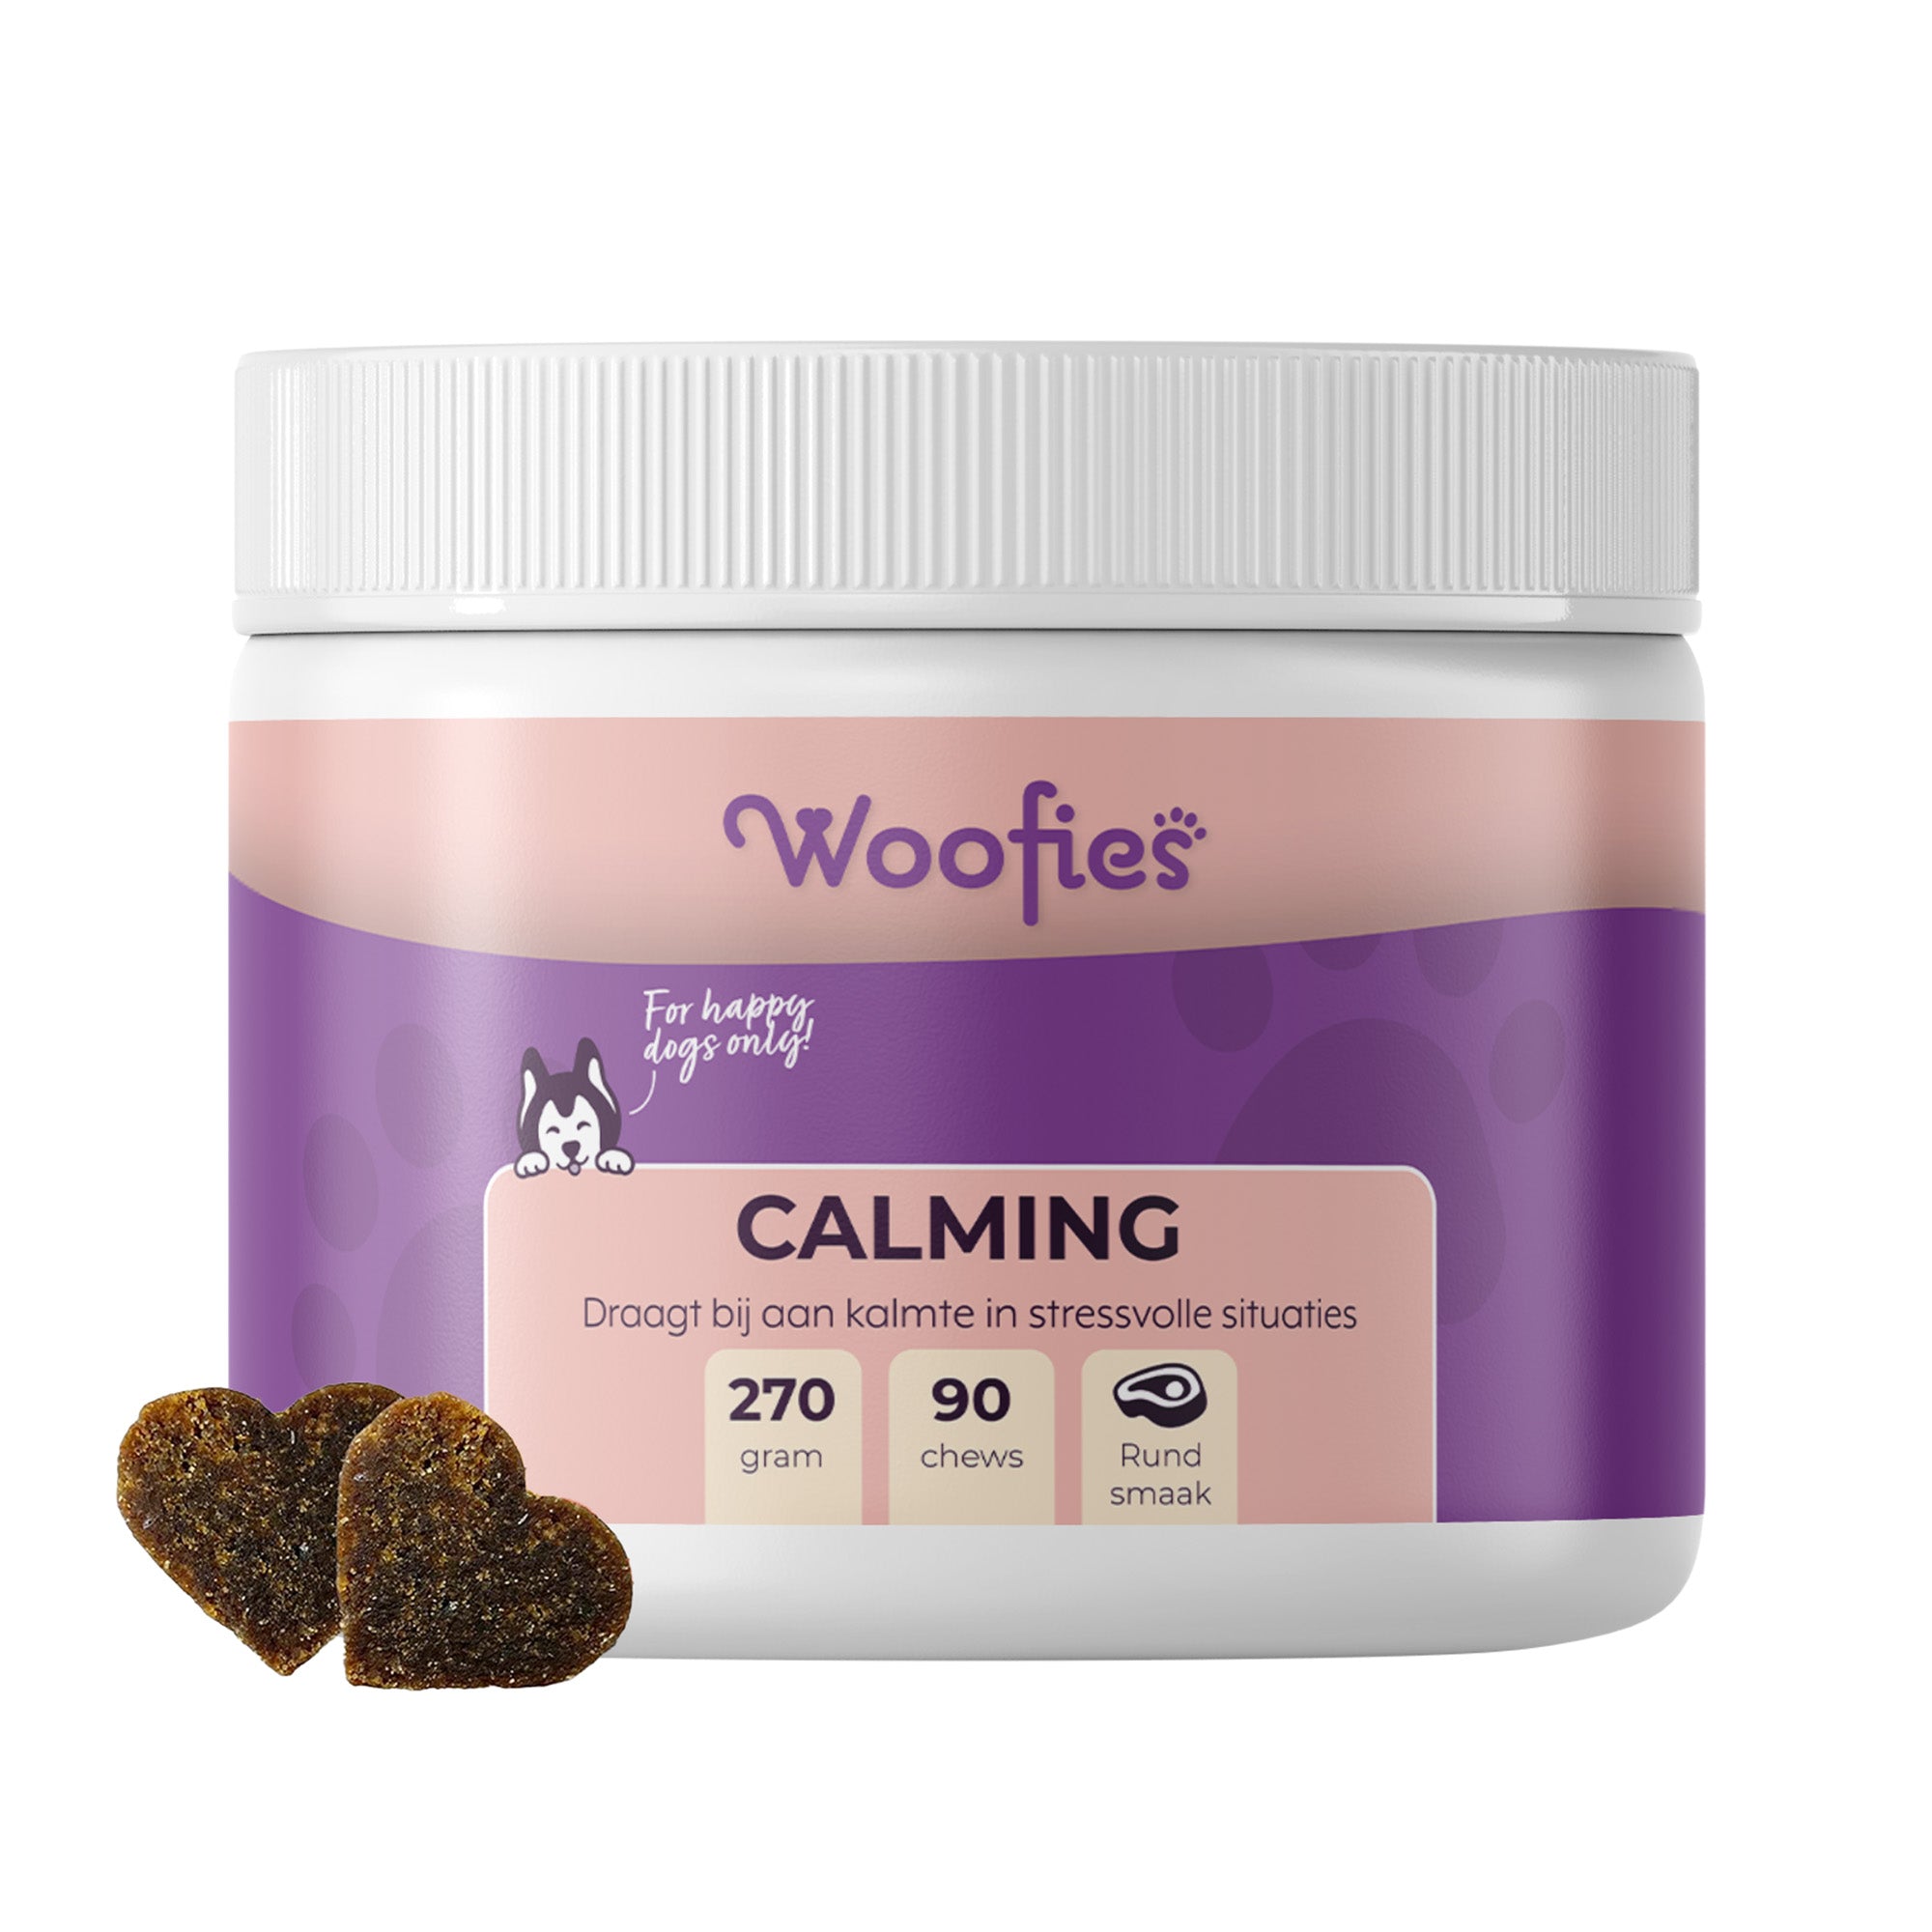 Woofies Calming Hondensnoepjes in verpakking voor stressverlichting en rust.